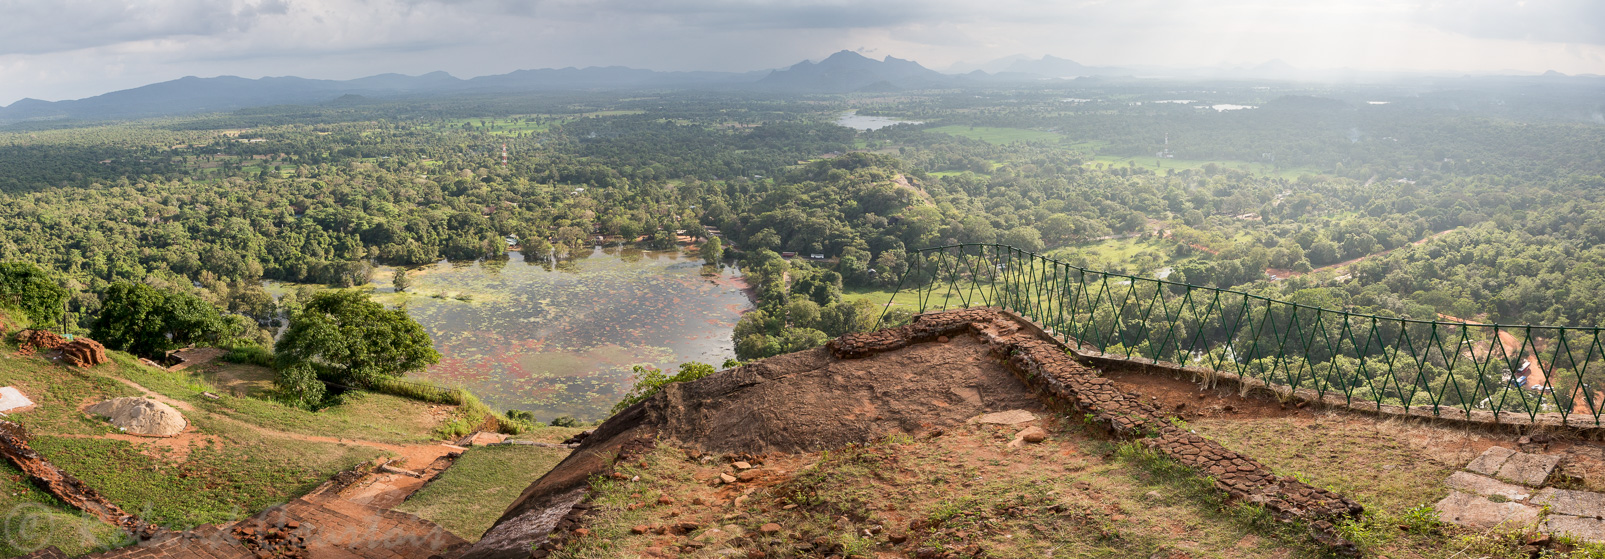 Site de Sigiriya. Panorama sur le paysage entourant la citadelle.